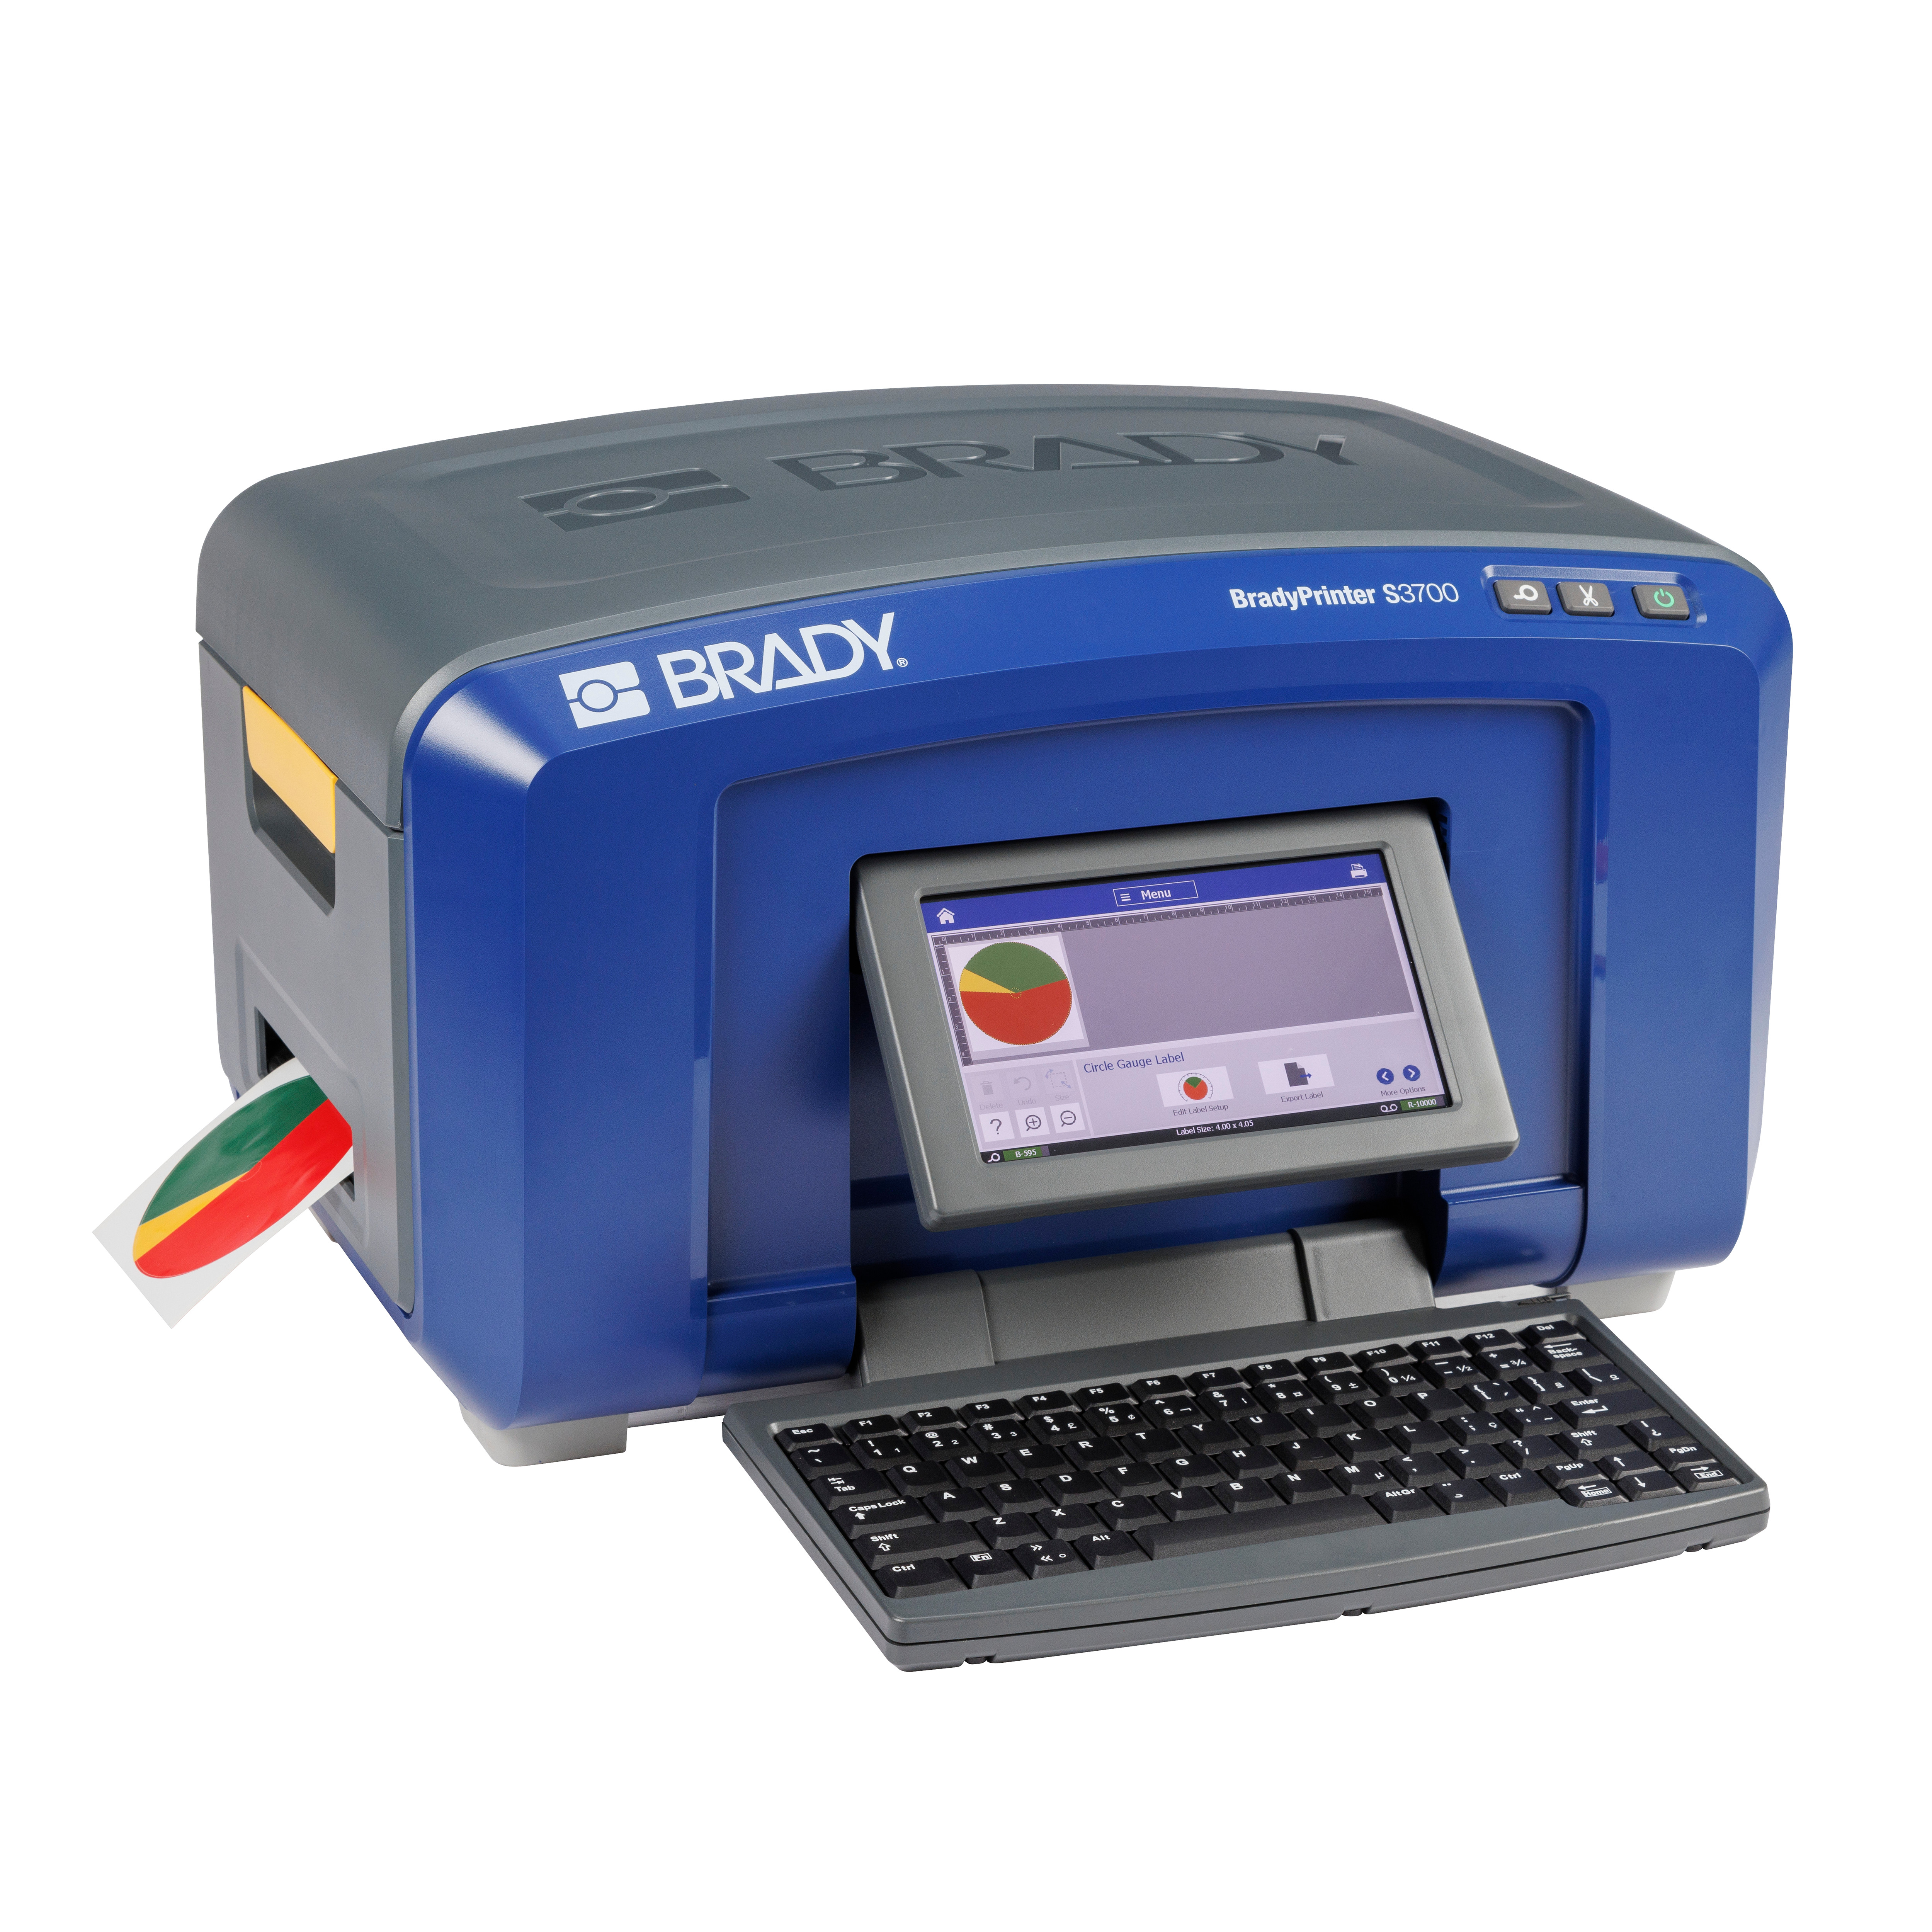 BRADY S3700 Multicolour & Cut Schilder- und Etikettendrucker mit QWERTZ-Tastatur